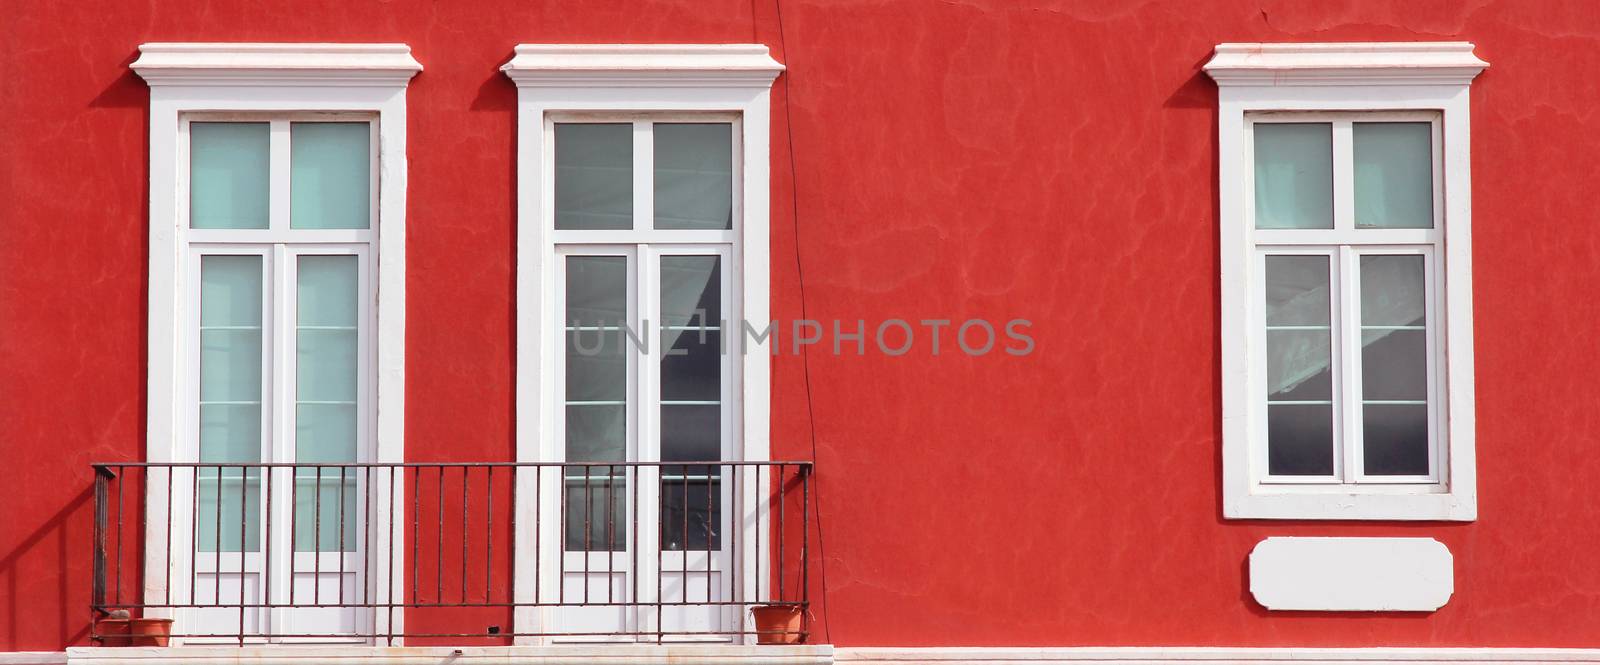 Spain. Canary Islands. Gran Canaria island. Las Palmas de Gran Canaria. Detail of ochre facade with three windows